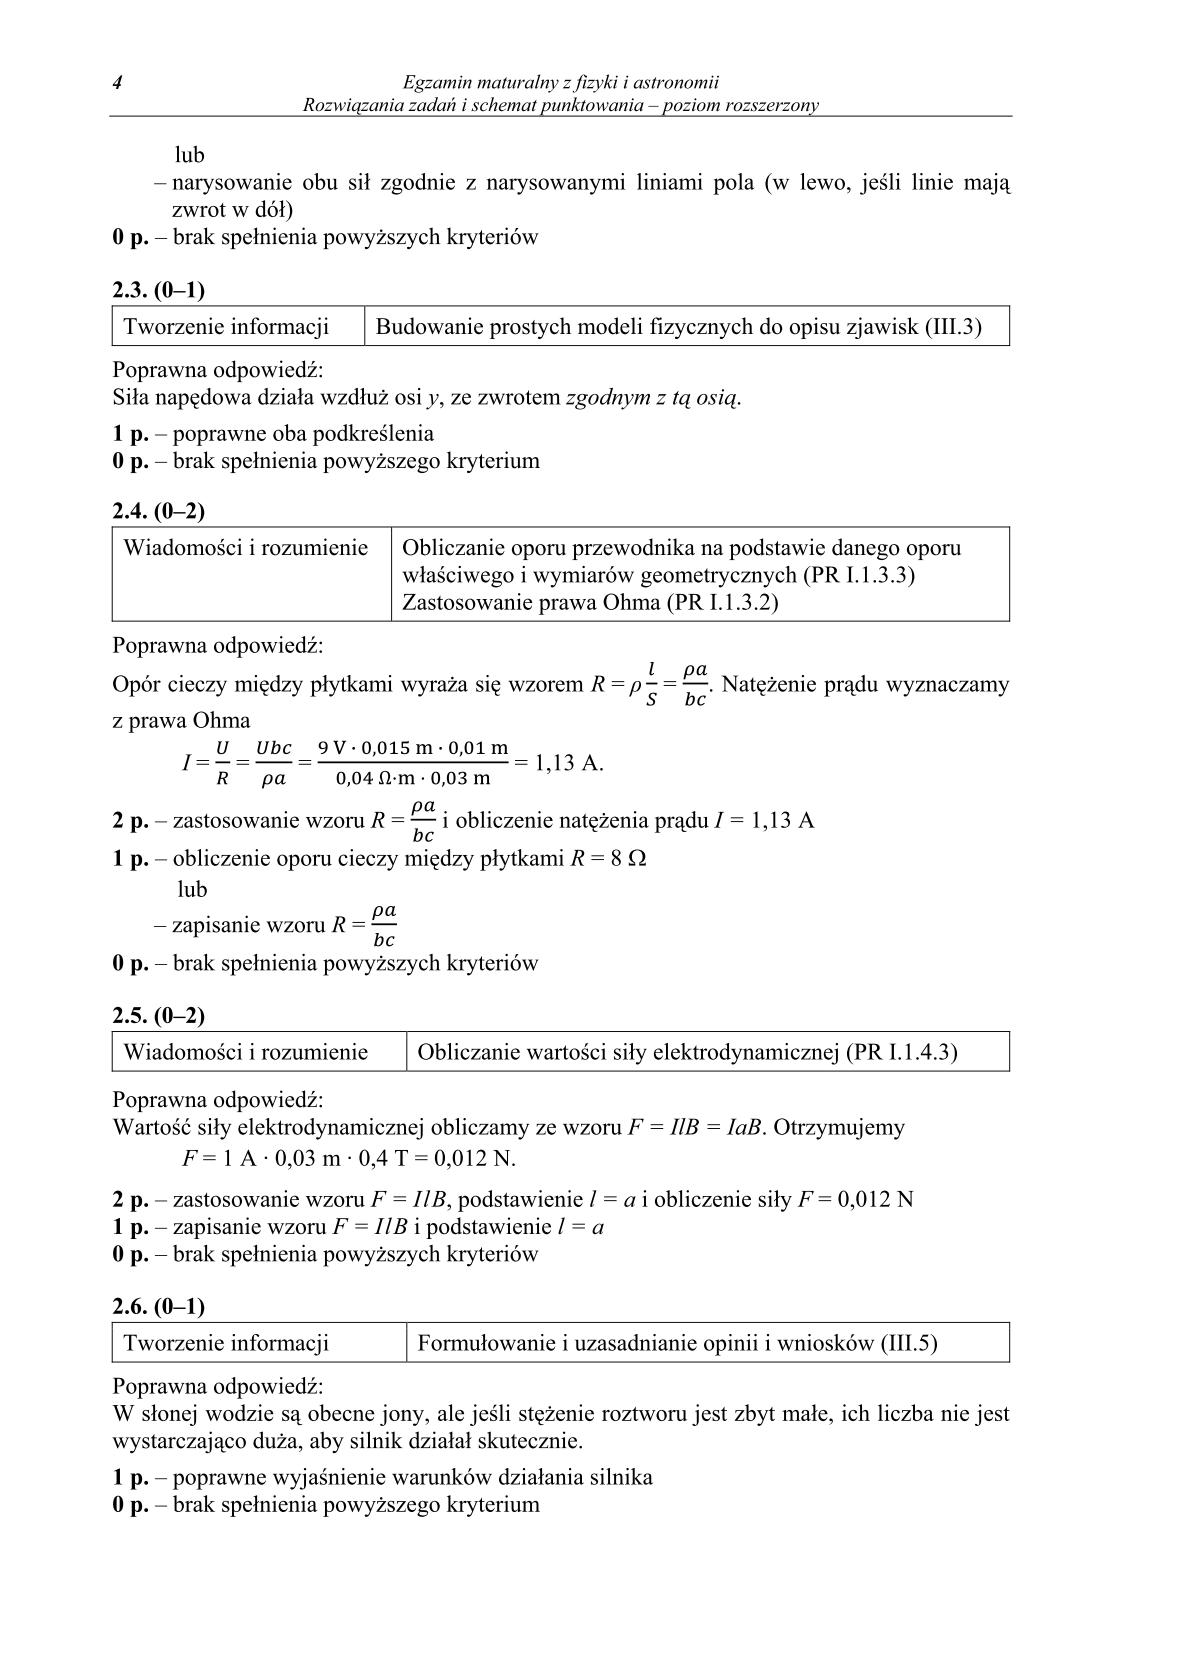 odpowiedzi-fizyka-i-astronomia-poziom-rozszerzony-matura-2014-str.4